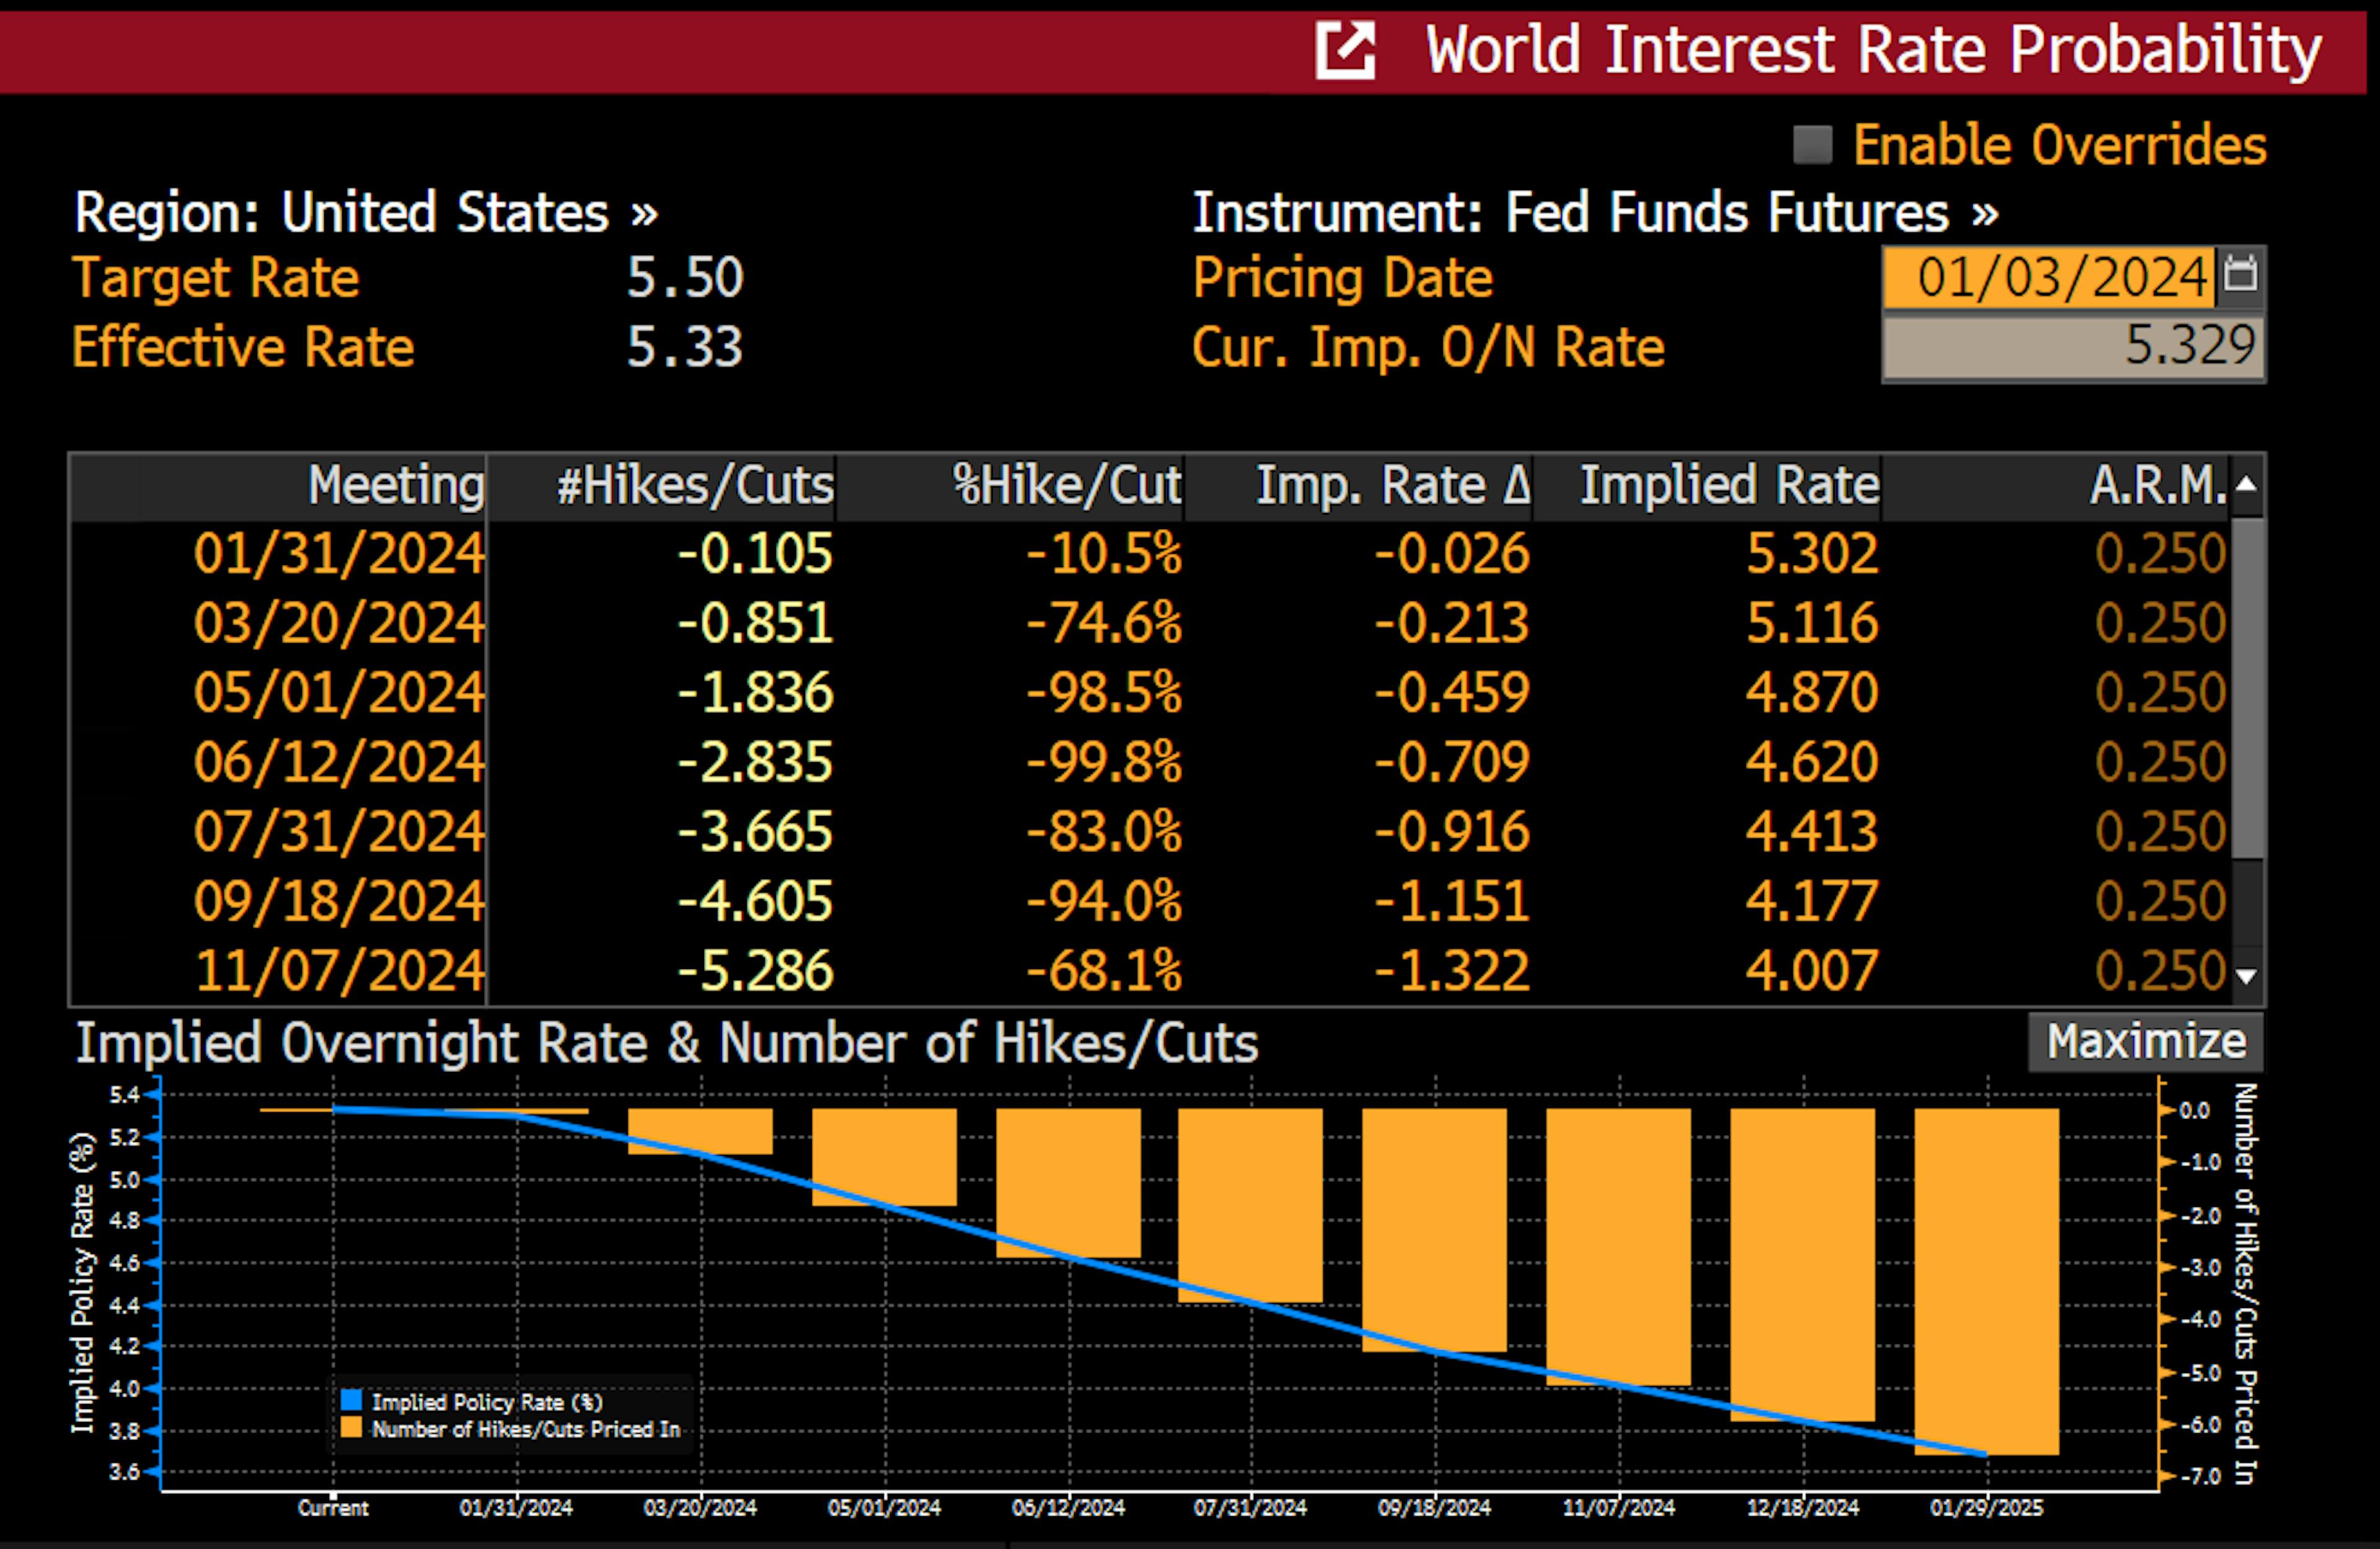 Đây là bảng về tương lai của Quỹ Fed ngụ ý xác suất tăng lãi suất tại các cuộc họp của Fed trong tương lai. Như bạn có thể thấy, kể từ ngày 3 tháng 1, thị trường đang định giá 75% khả năng lãi suất sẽ giảm 0,25%.